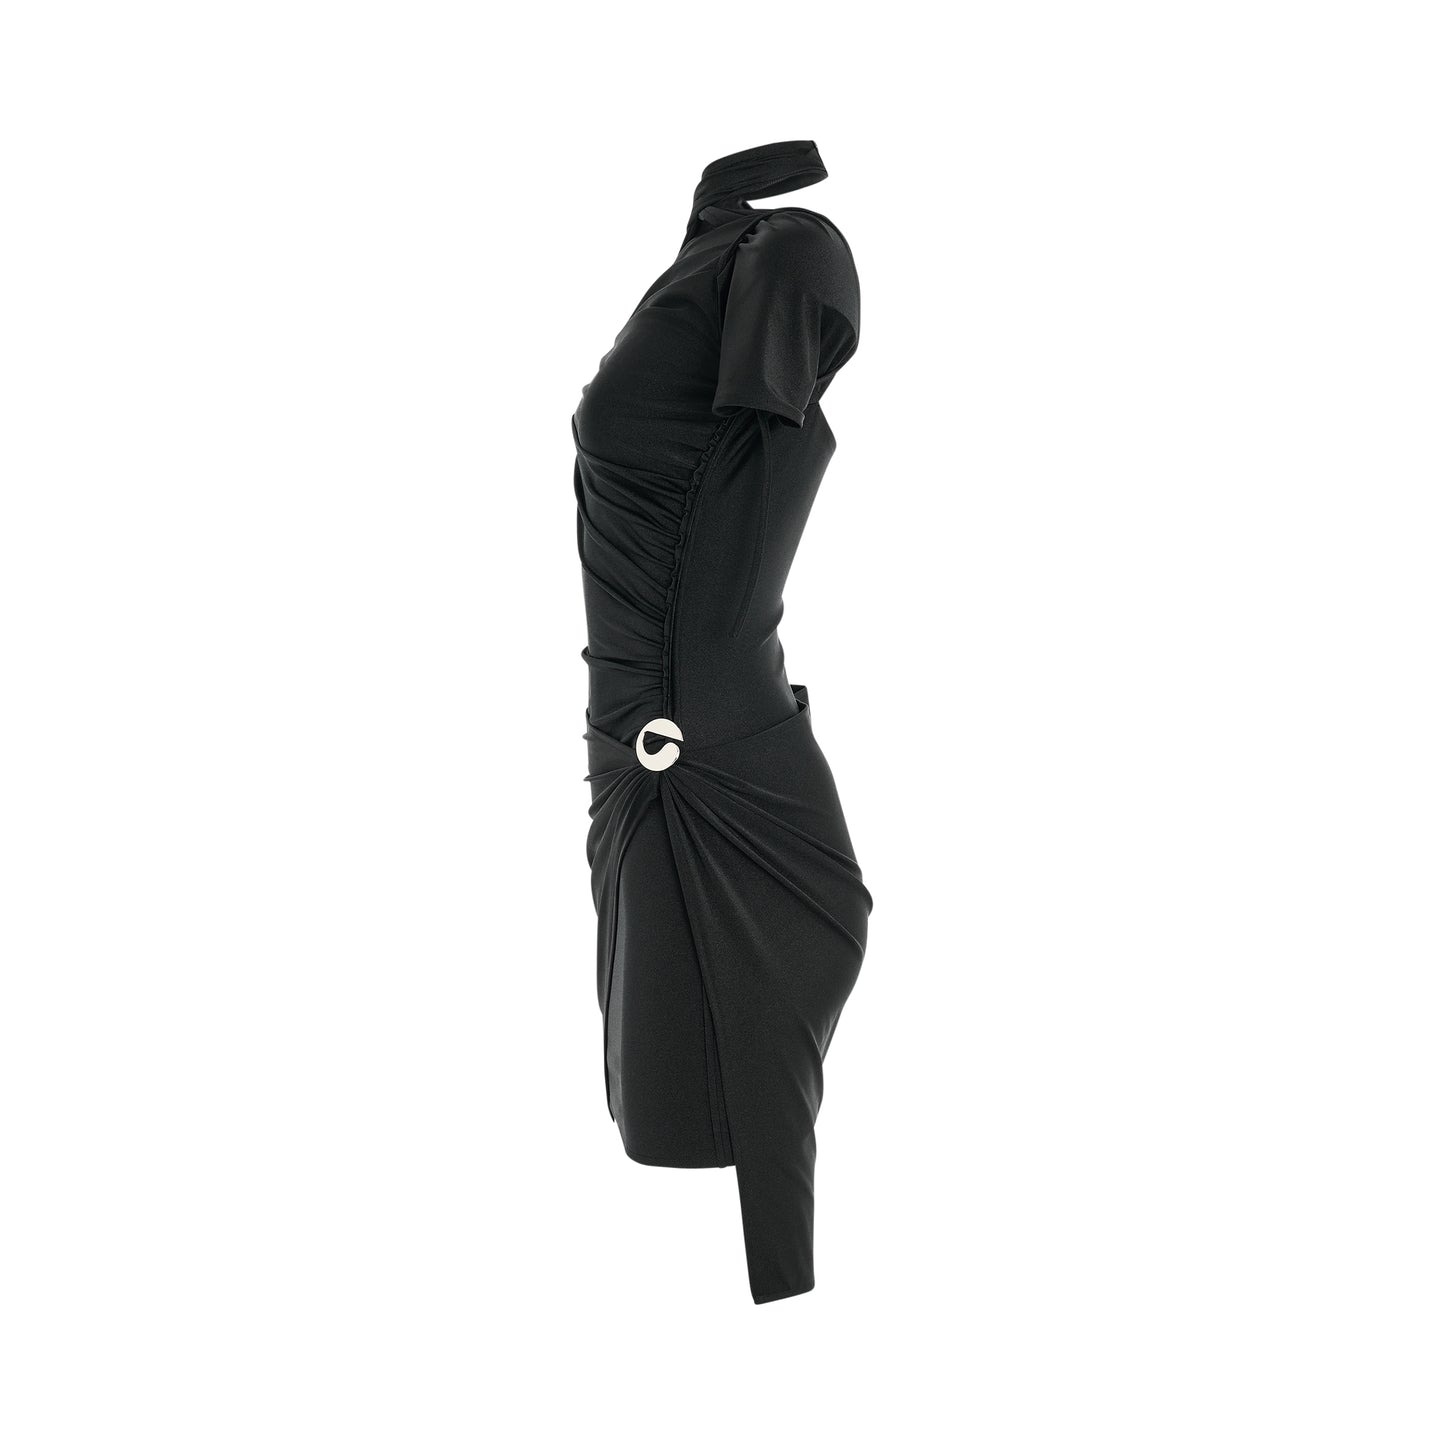 Asymmetric Draped Jersey Dress in Black